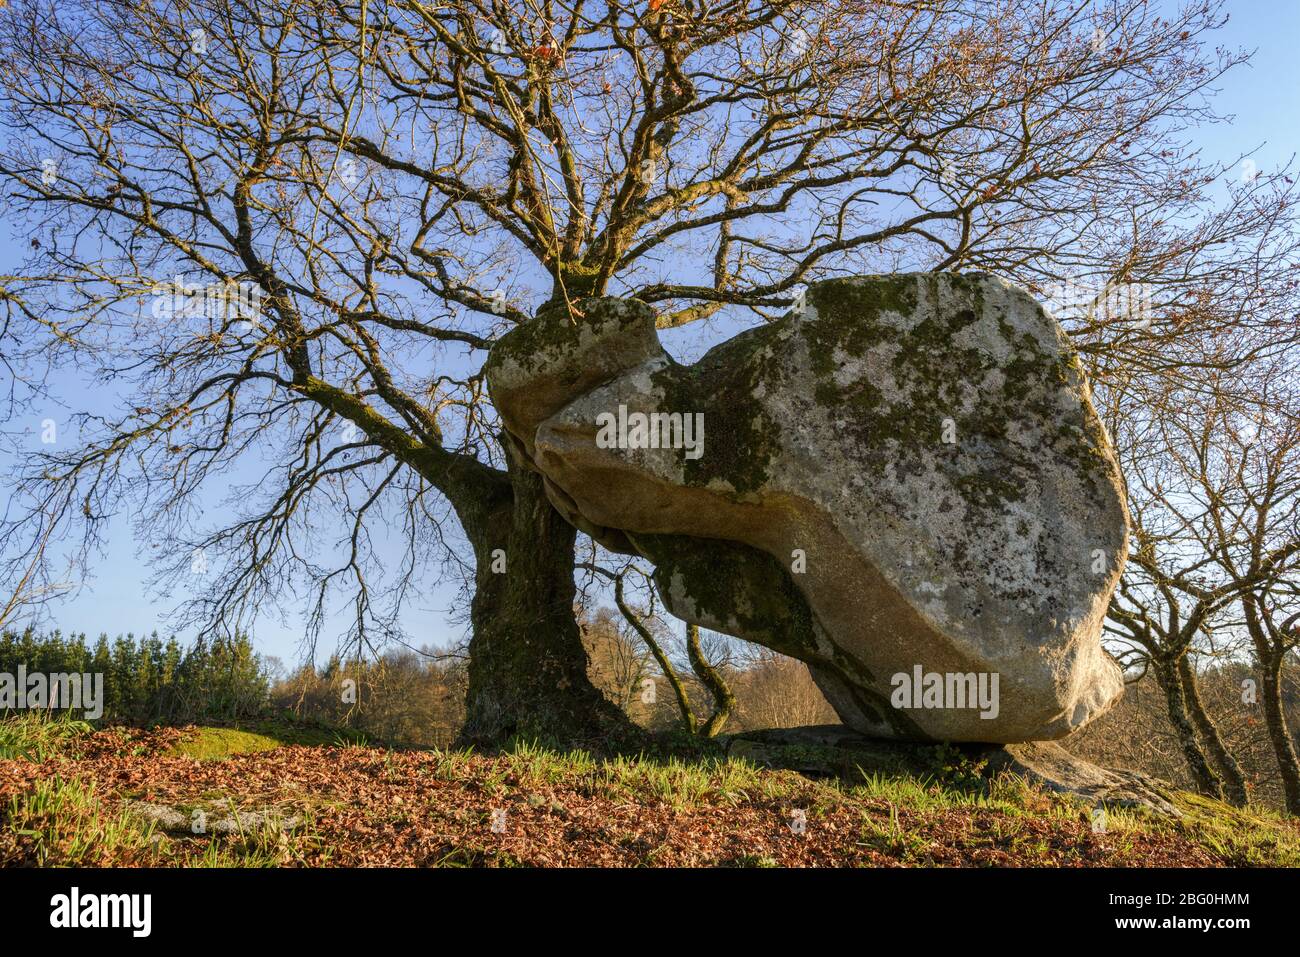 Monument mégalithique d'origine celtique avec une énorme roche sculptée à côté d'une oak.tiff sacrée Banque D'Images